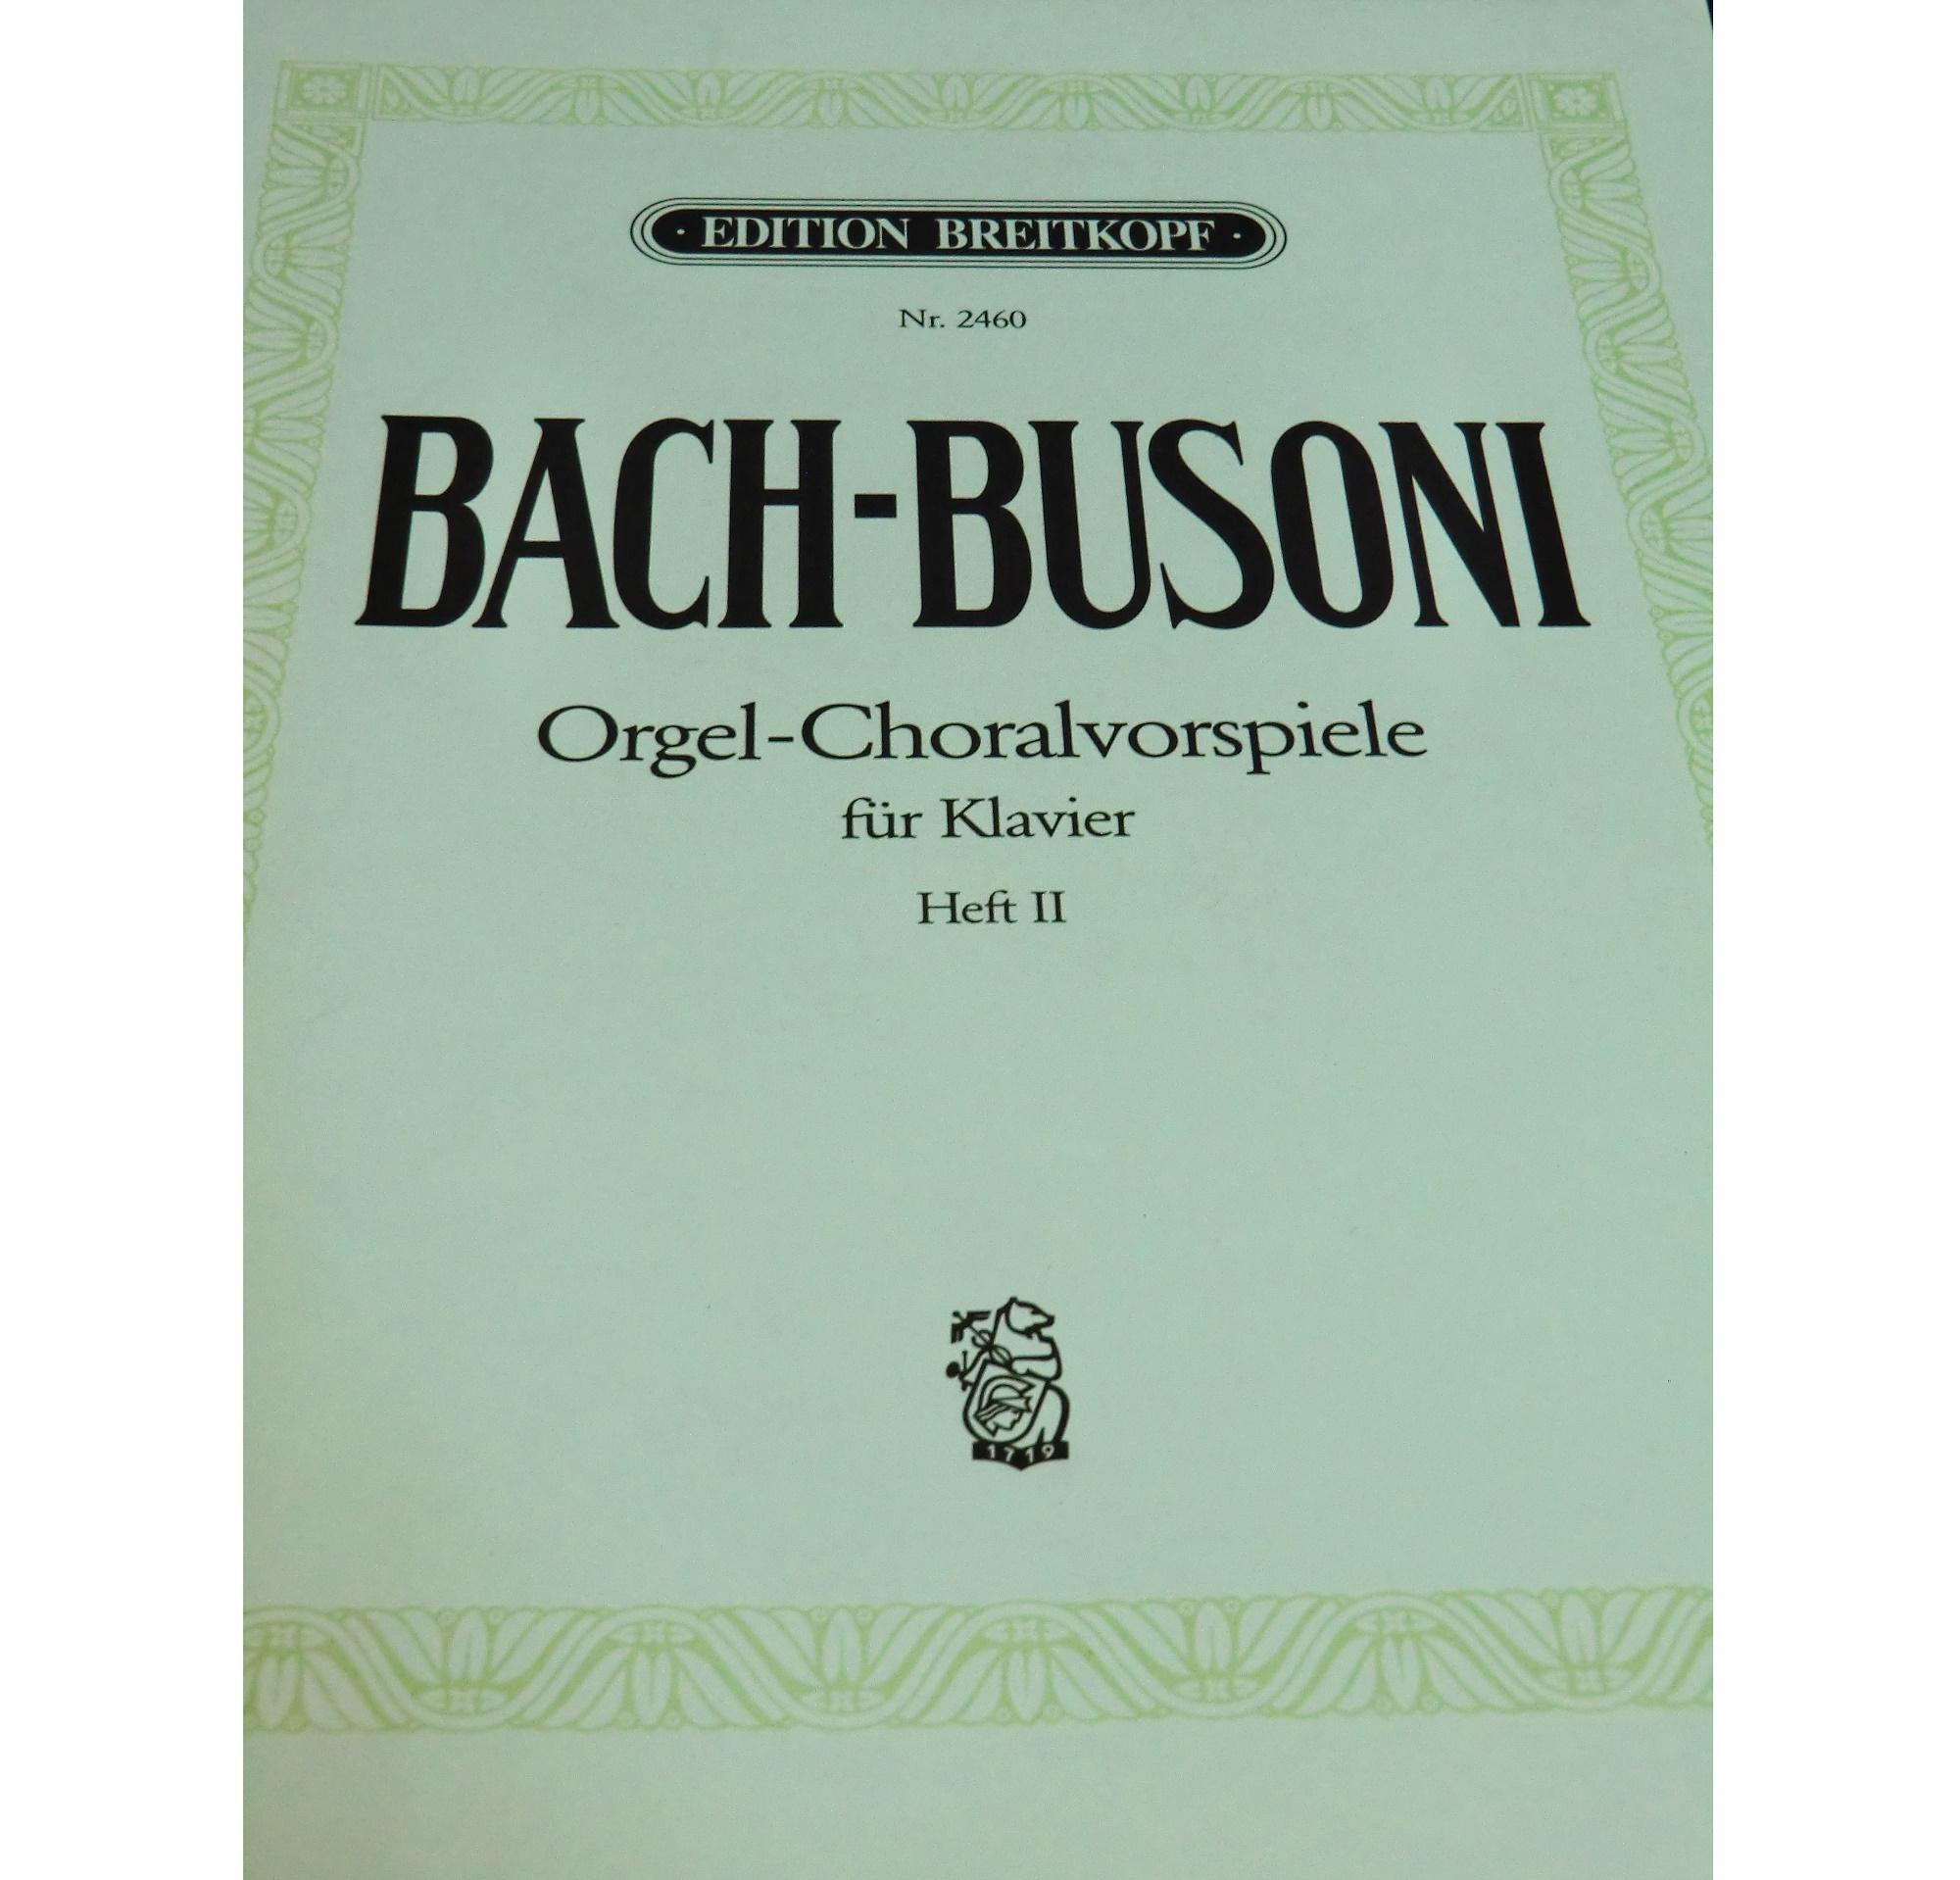 Bach-Busoni Orgel -Choralvorspiele fur Klavier Heft II